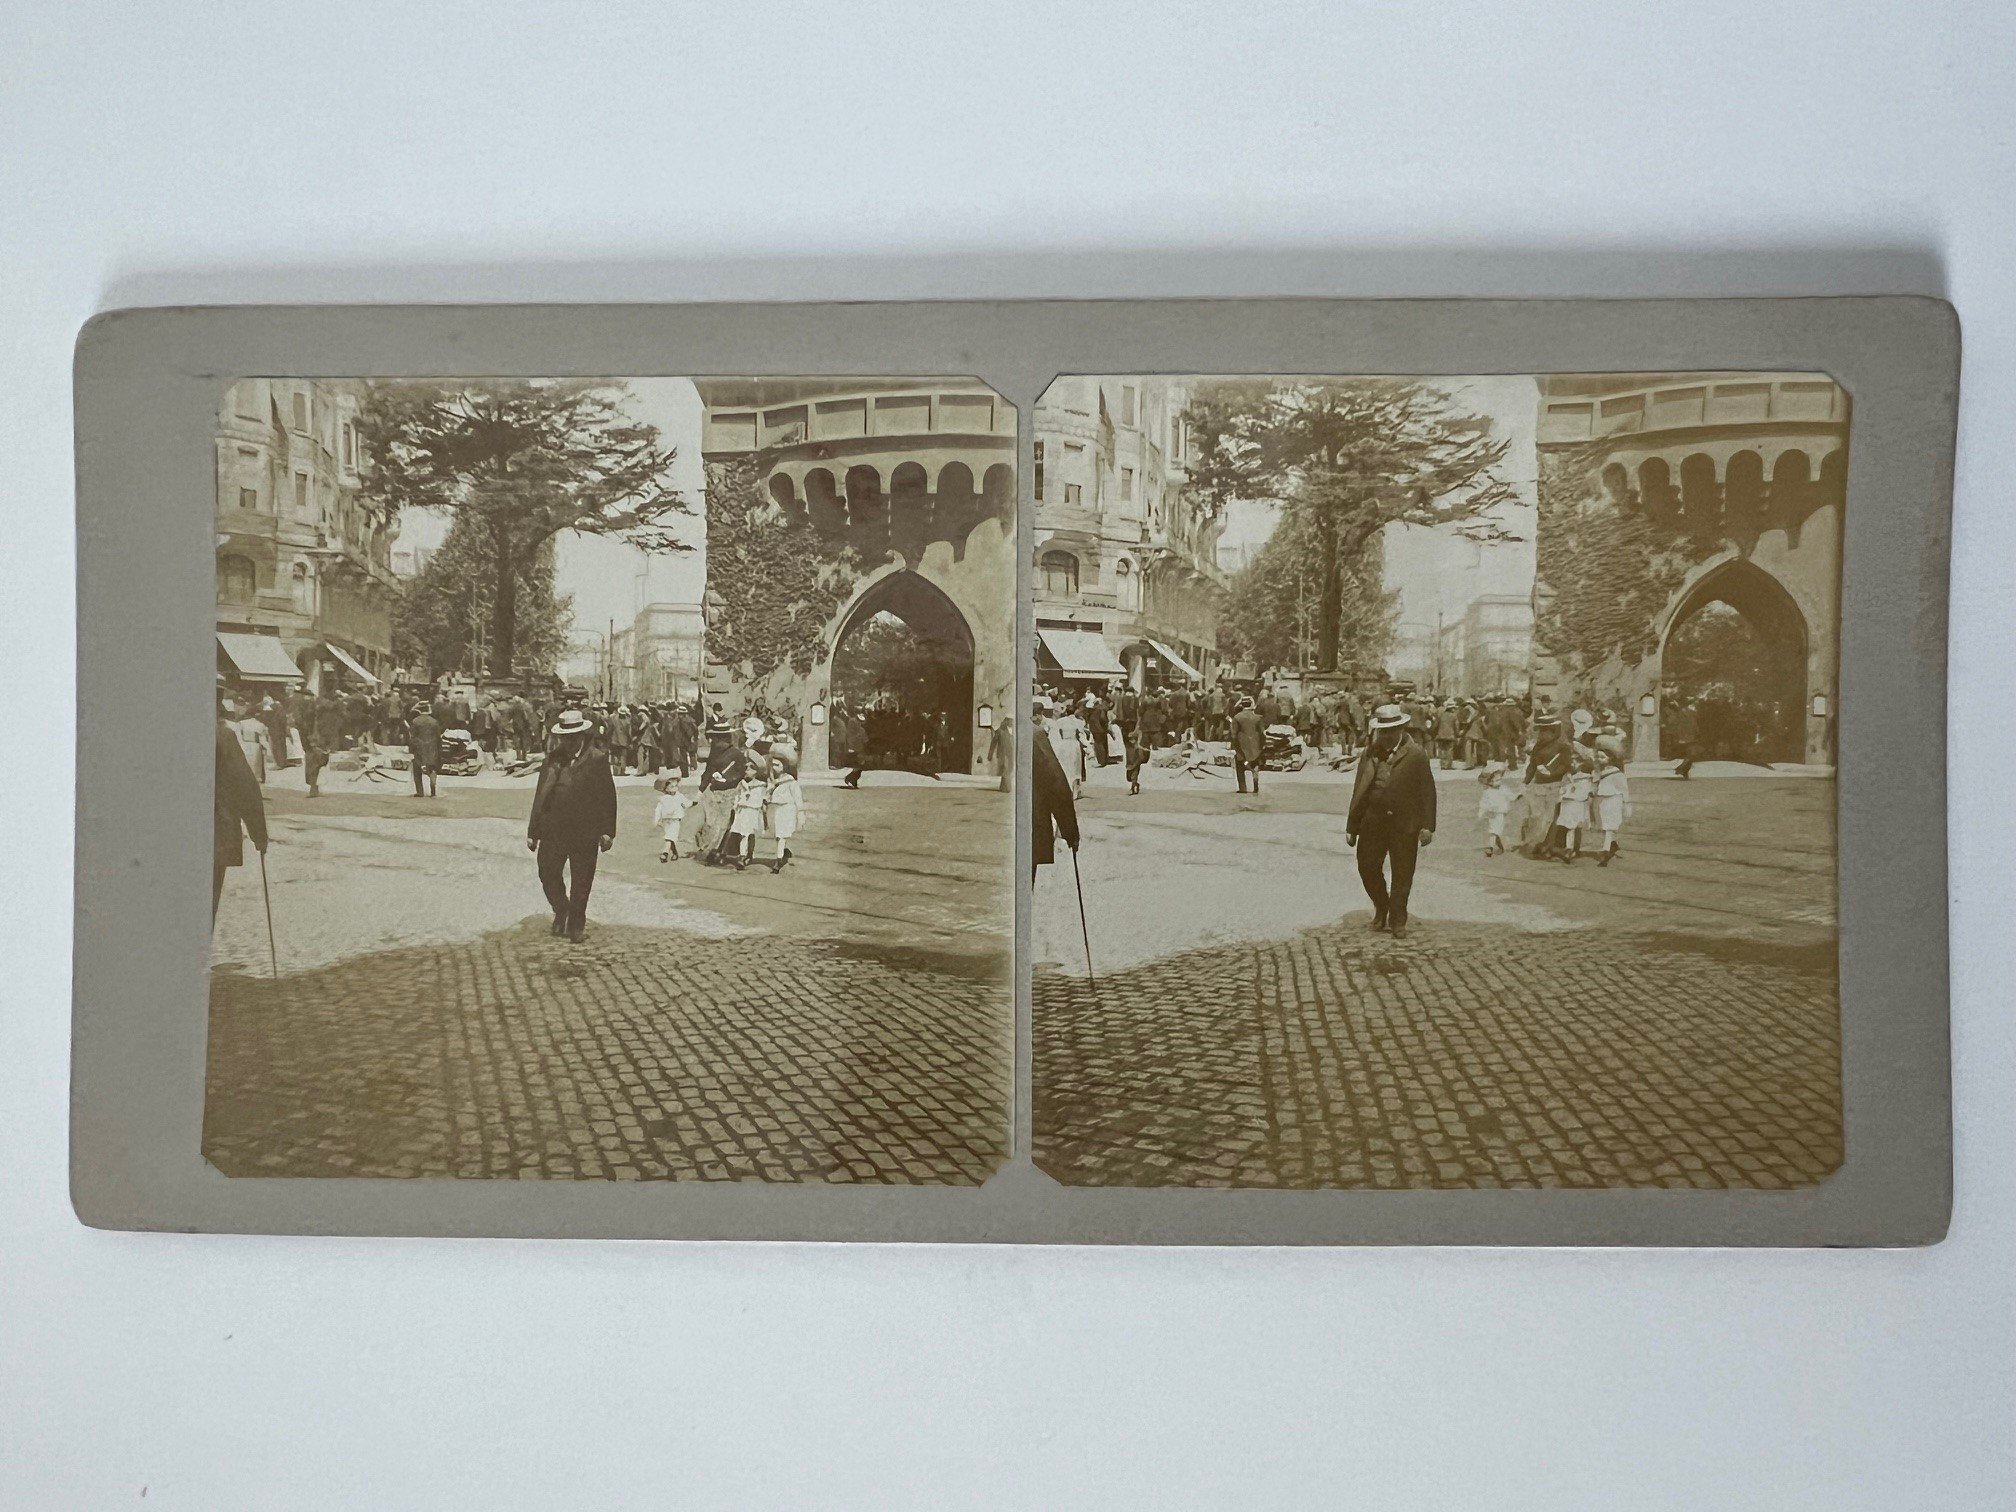 Stereobild, Unbekannter Fotograf, Frankfurt, Transport des Eibenbaumes, datiert 25. Mai 1907. (Taunus-Rhein-Main - Regionalgeschichtliche Sammlung Dr. Stefan Naas CC BY-NC-SA)